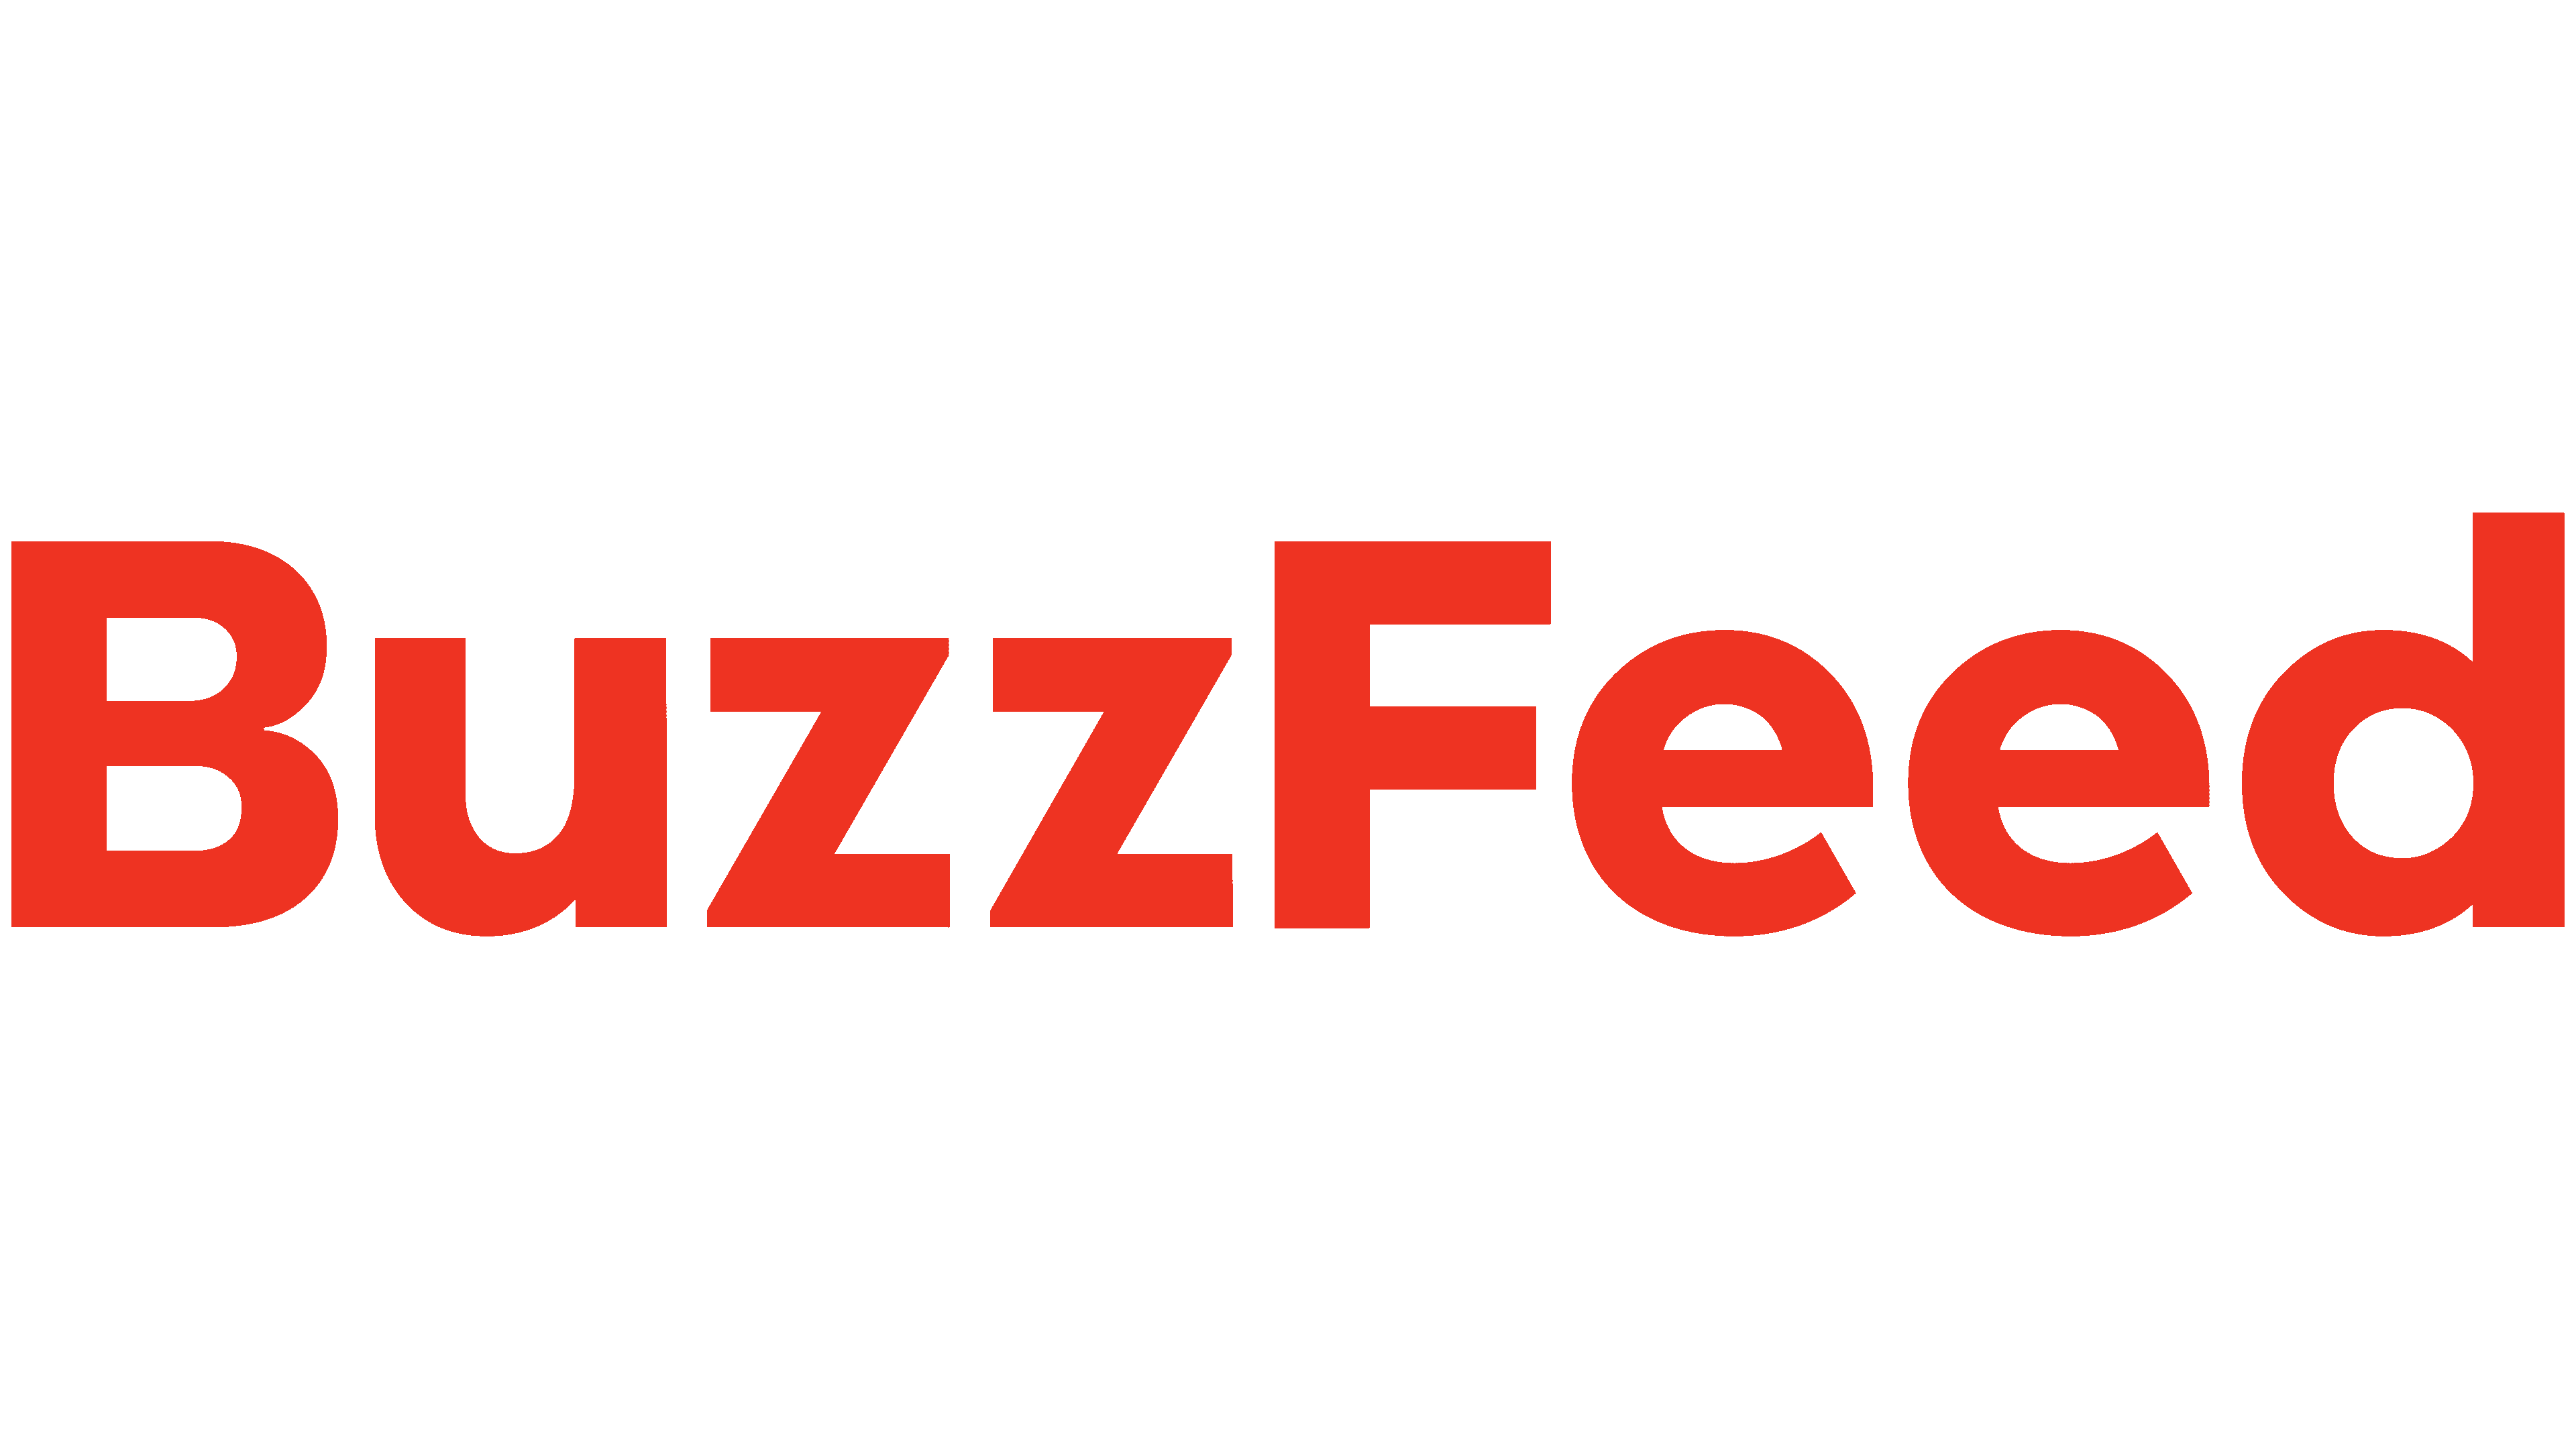 Логотип buzzfeed.com